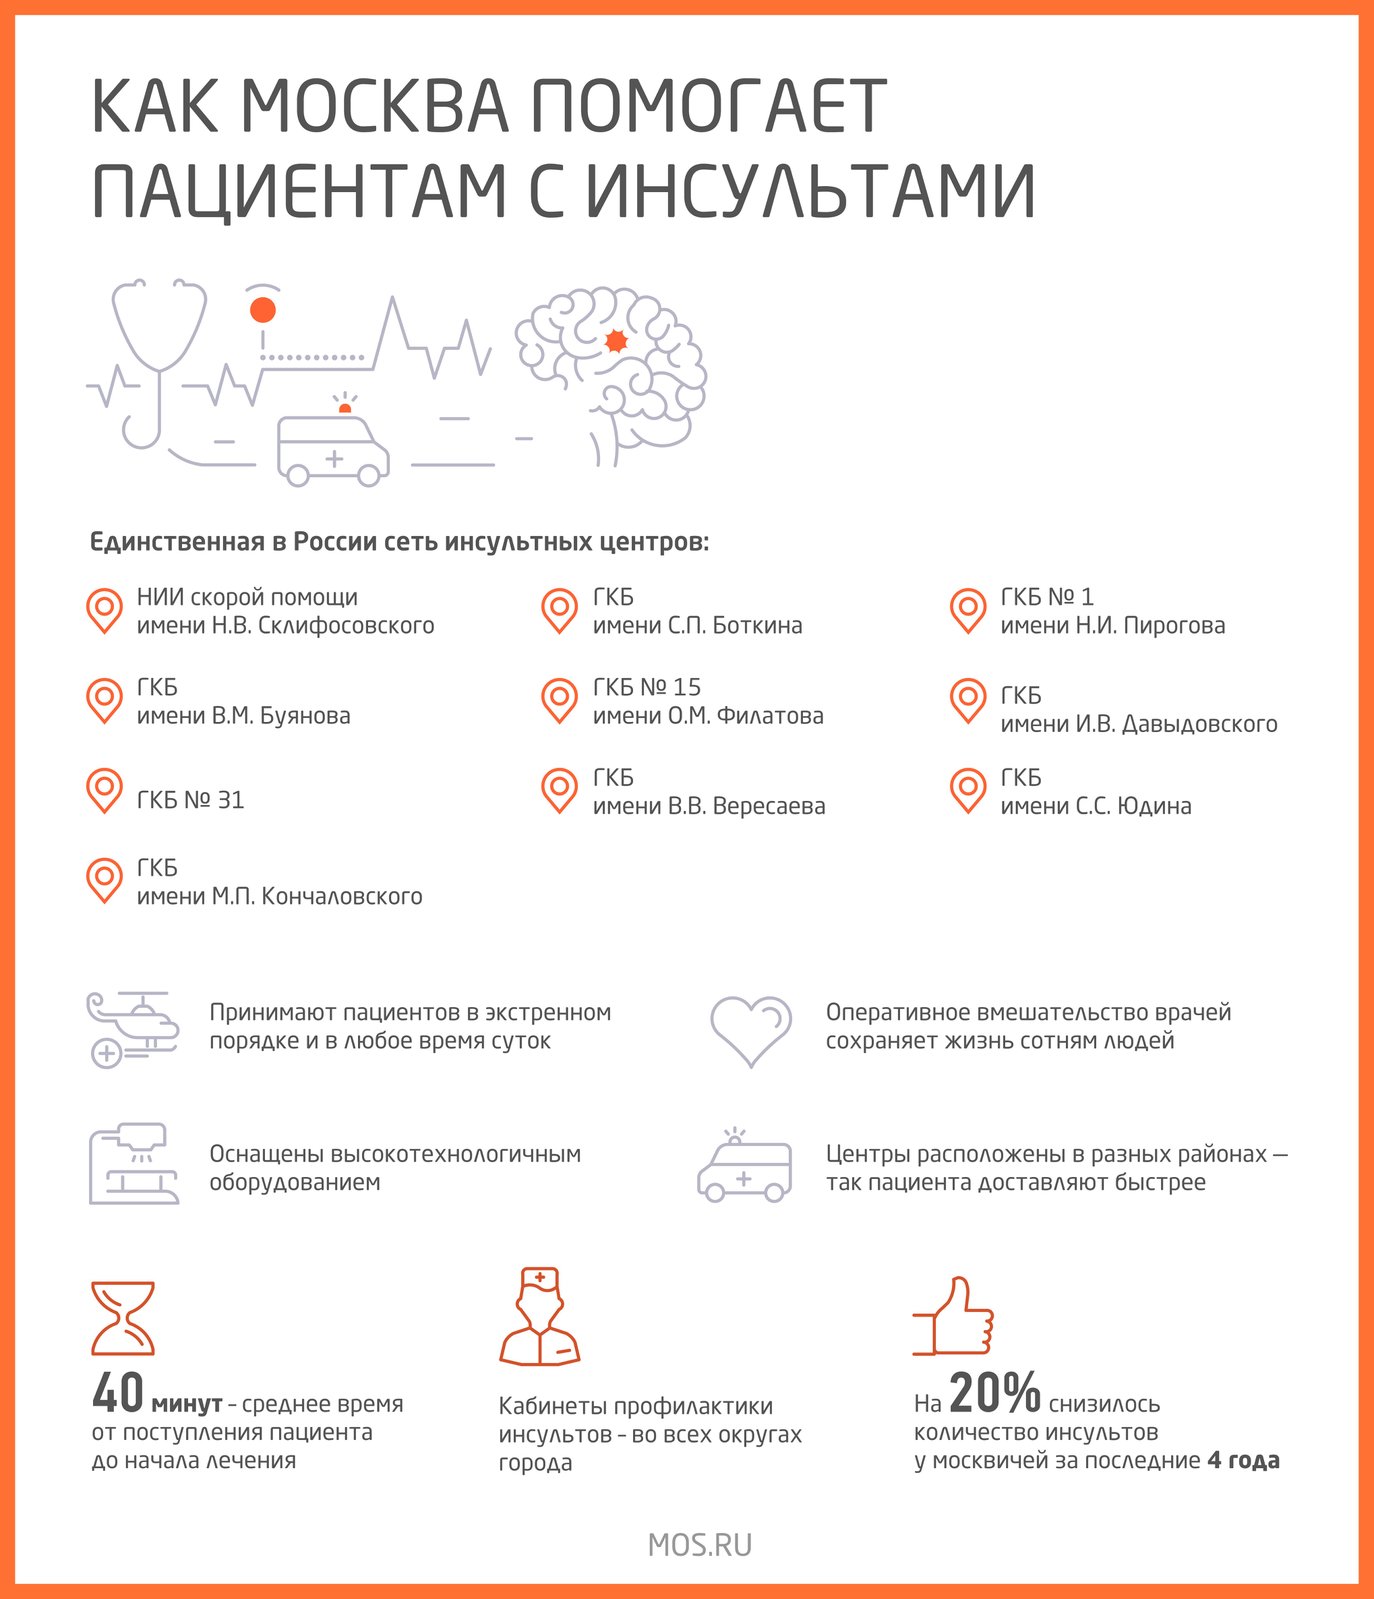 Как в Москве помогают пациентам с инсультом